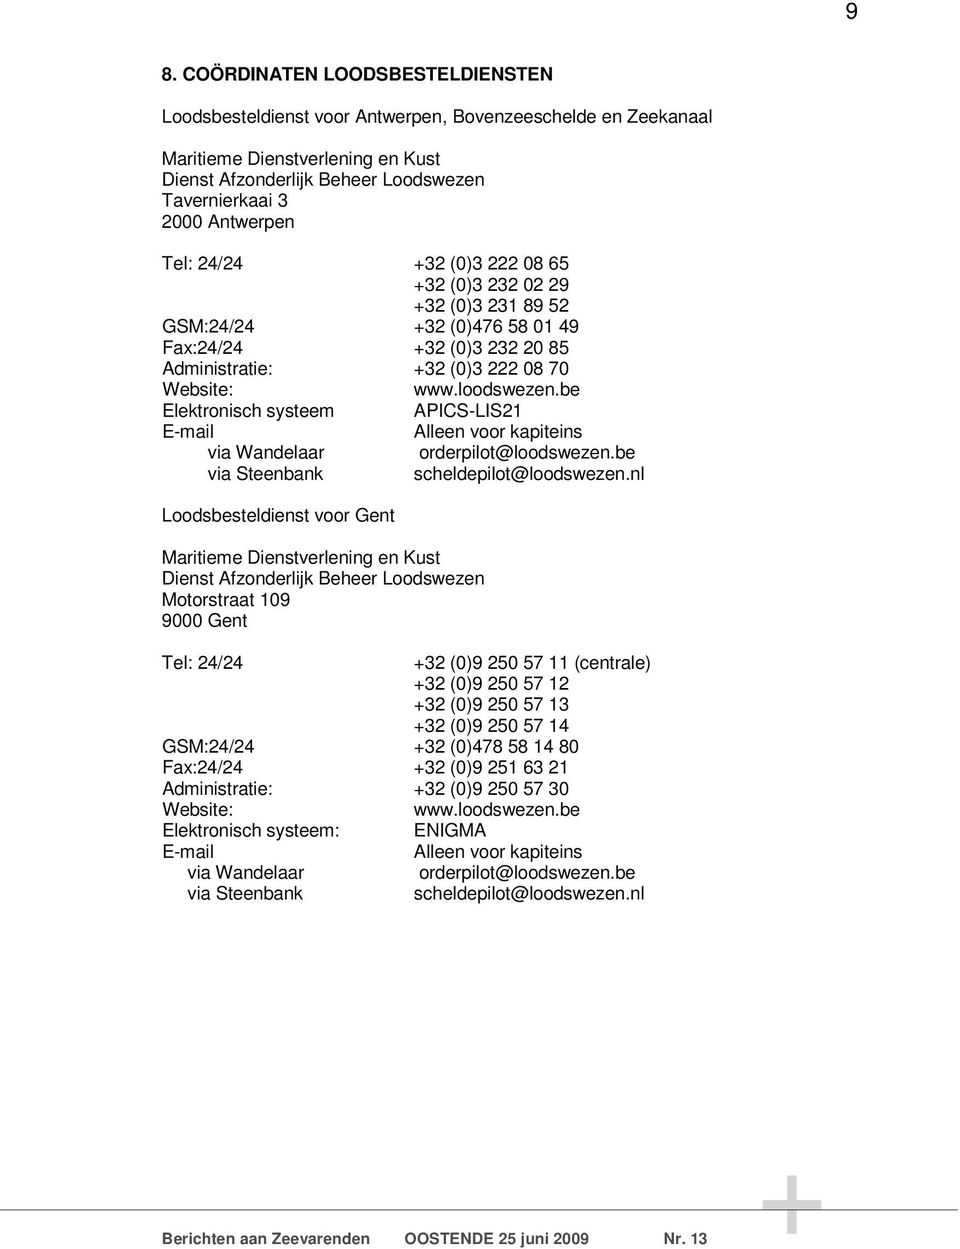 be Elektronisch systeem APICS-LIS21 E-mail Alleen voor kapiteins via Wandelaar orderpilot@loodswezen.be via Steenbank scheldepilot@loodswezen.